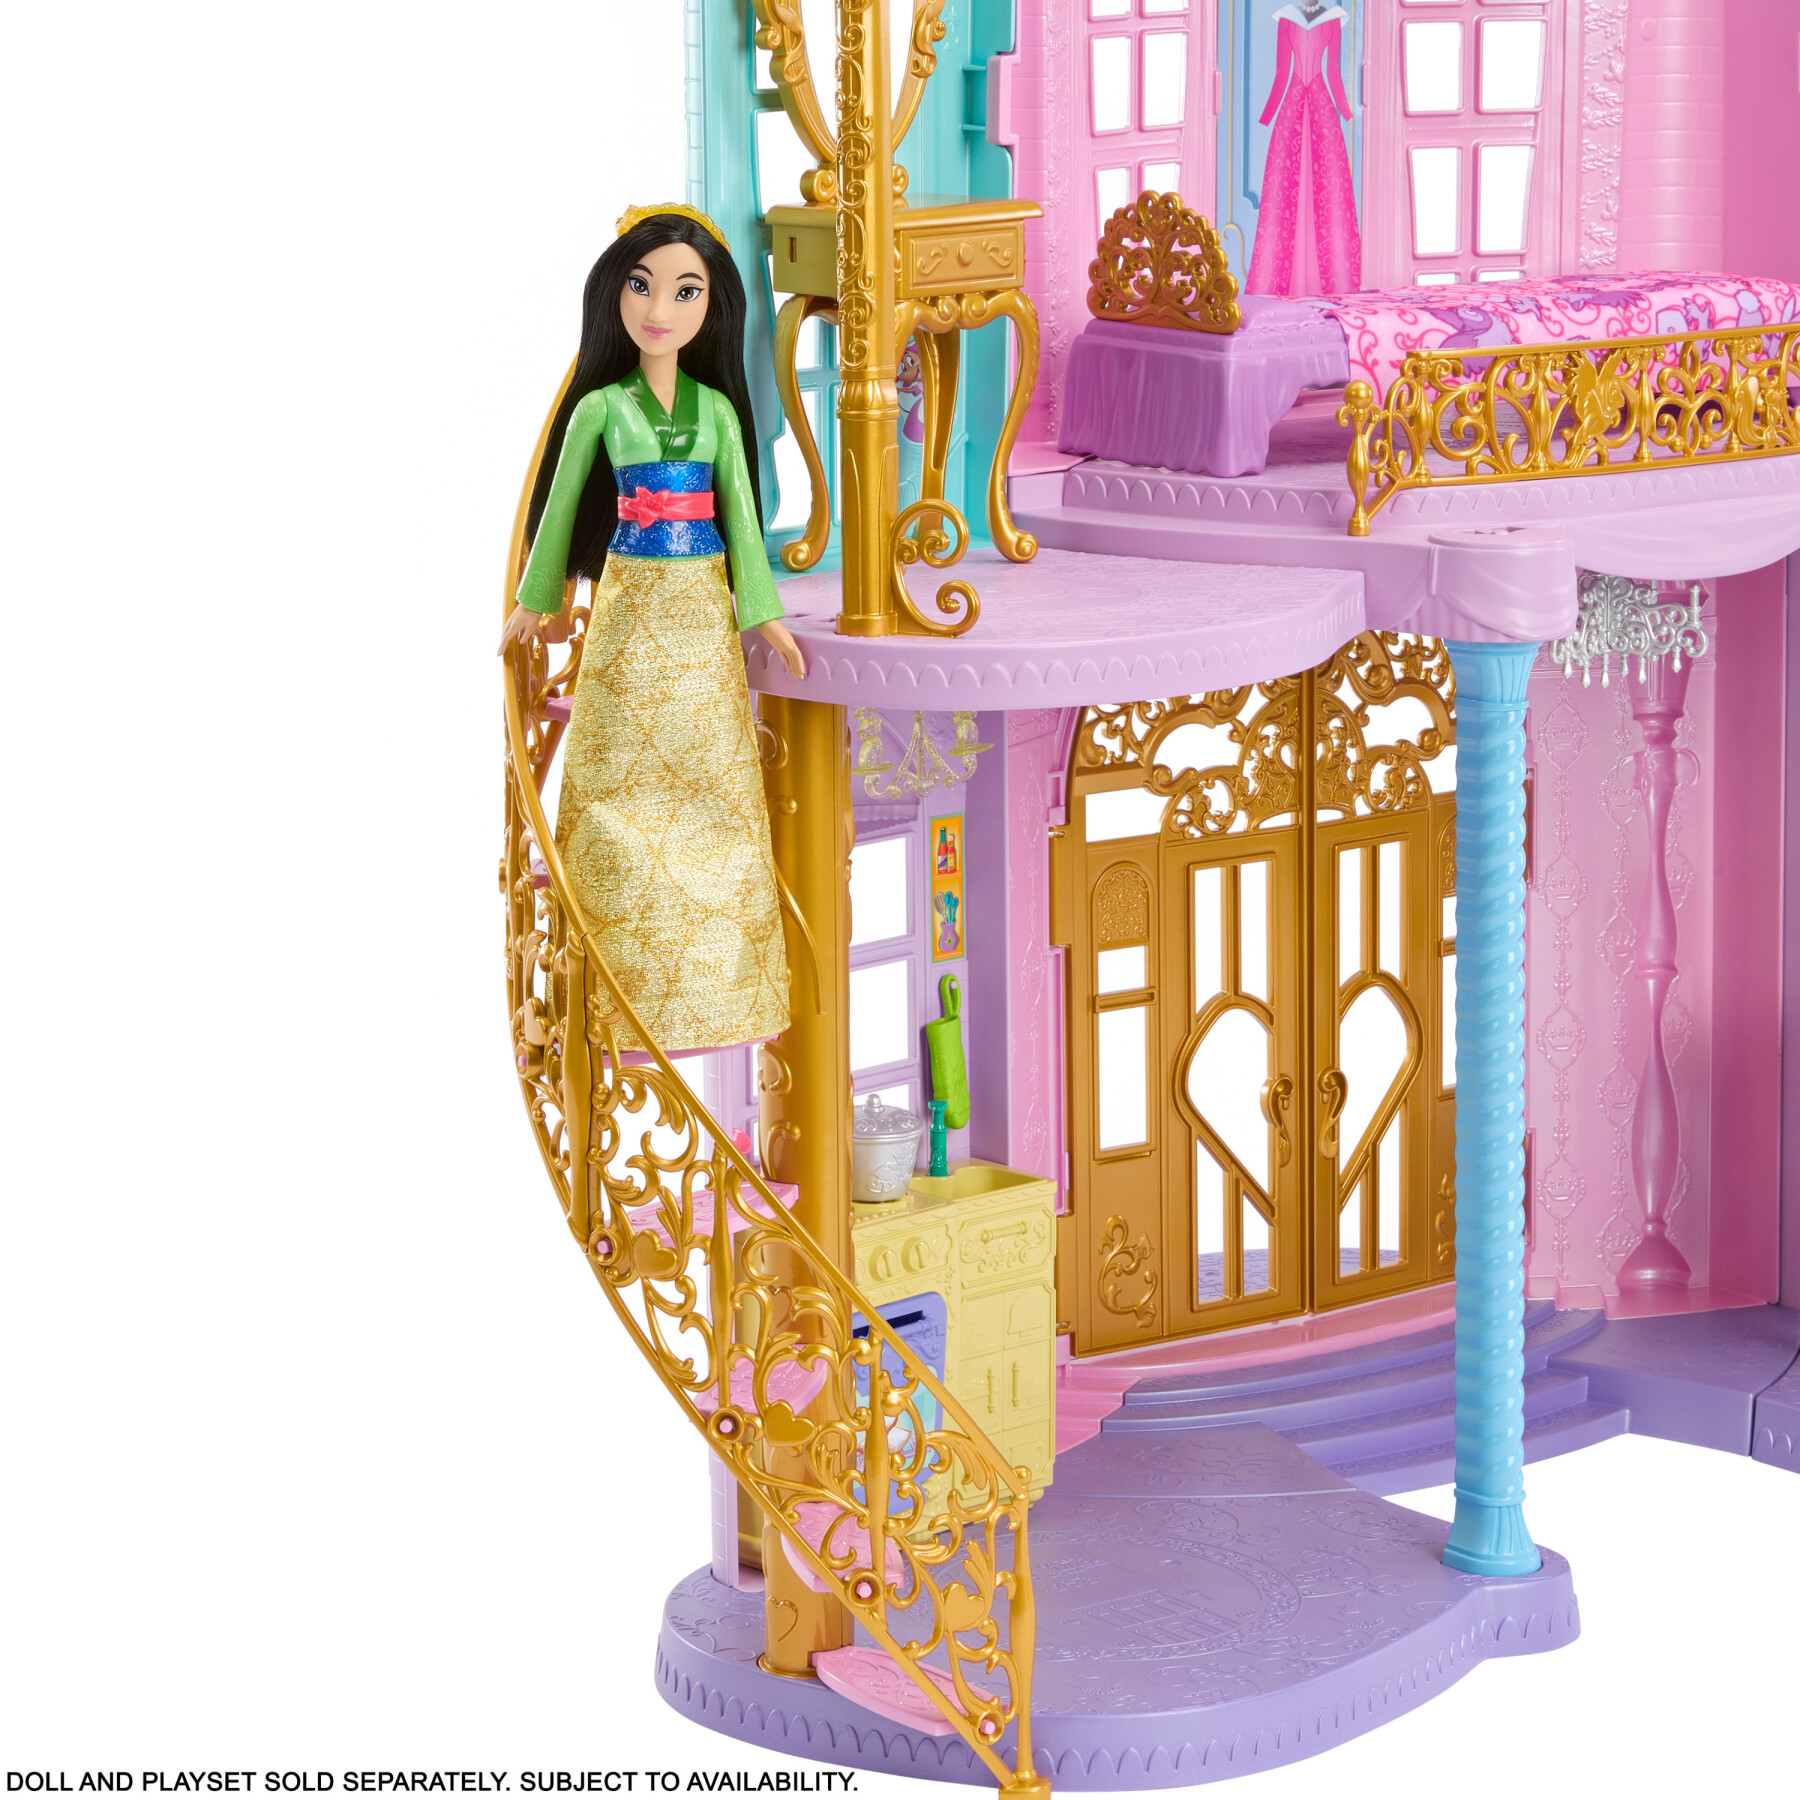 Disney princess magiche avventure nel castello, ispirato ai film disney - DISNEY PRINCESS